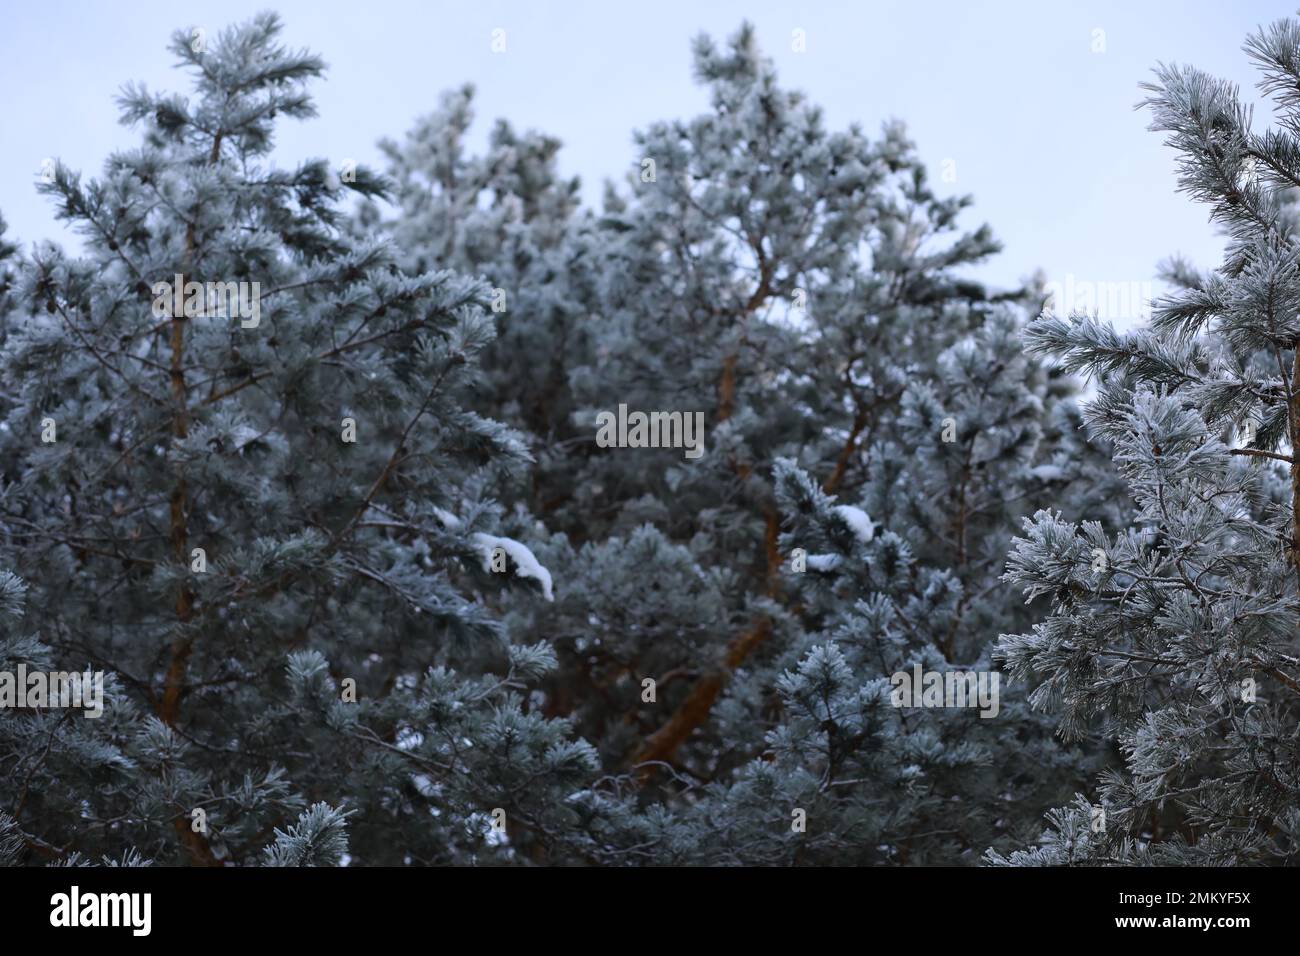 Neige blanche sur des branches d'arbres nus lors d'une journée hivernale glacielle, gros plan. Arrière-plan naturel. Fond botanique sélectif. Photo de haute qualité Banque D'Images